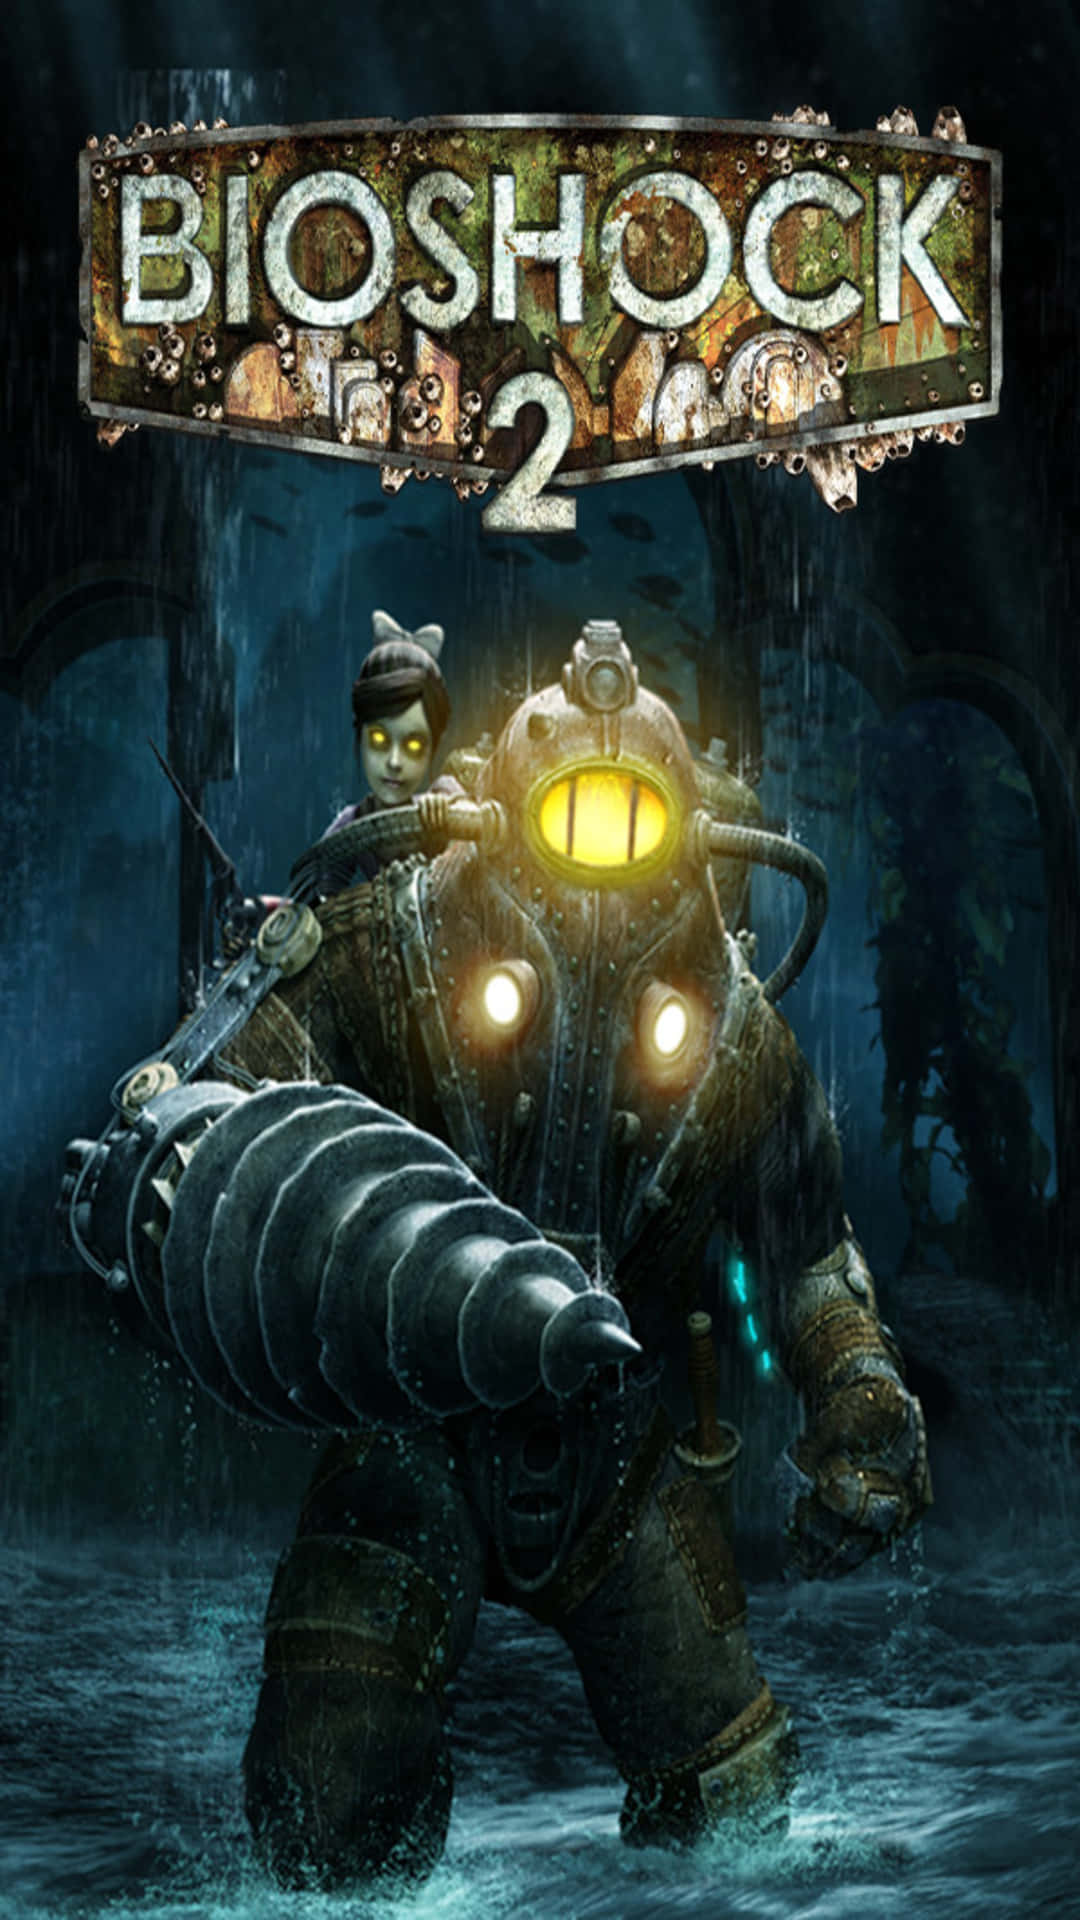 Androidbioshock Infinite Hintergrund Bioshock 2 Spiel Plakat.